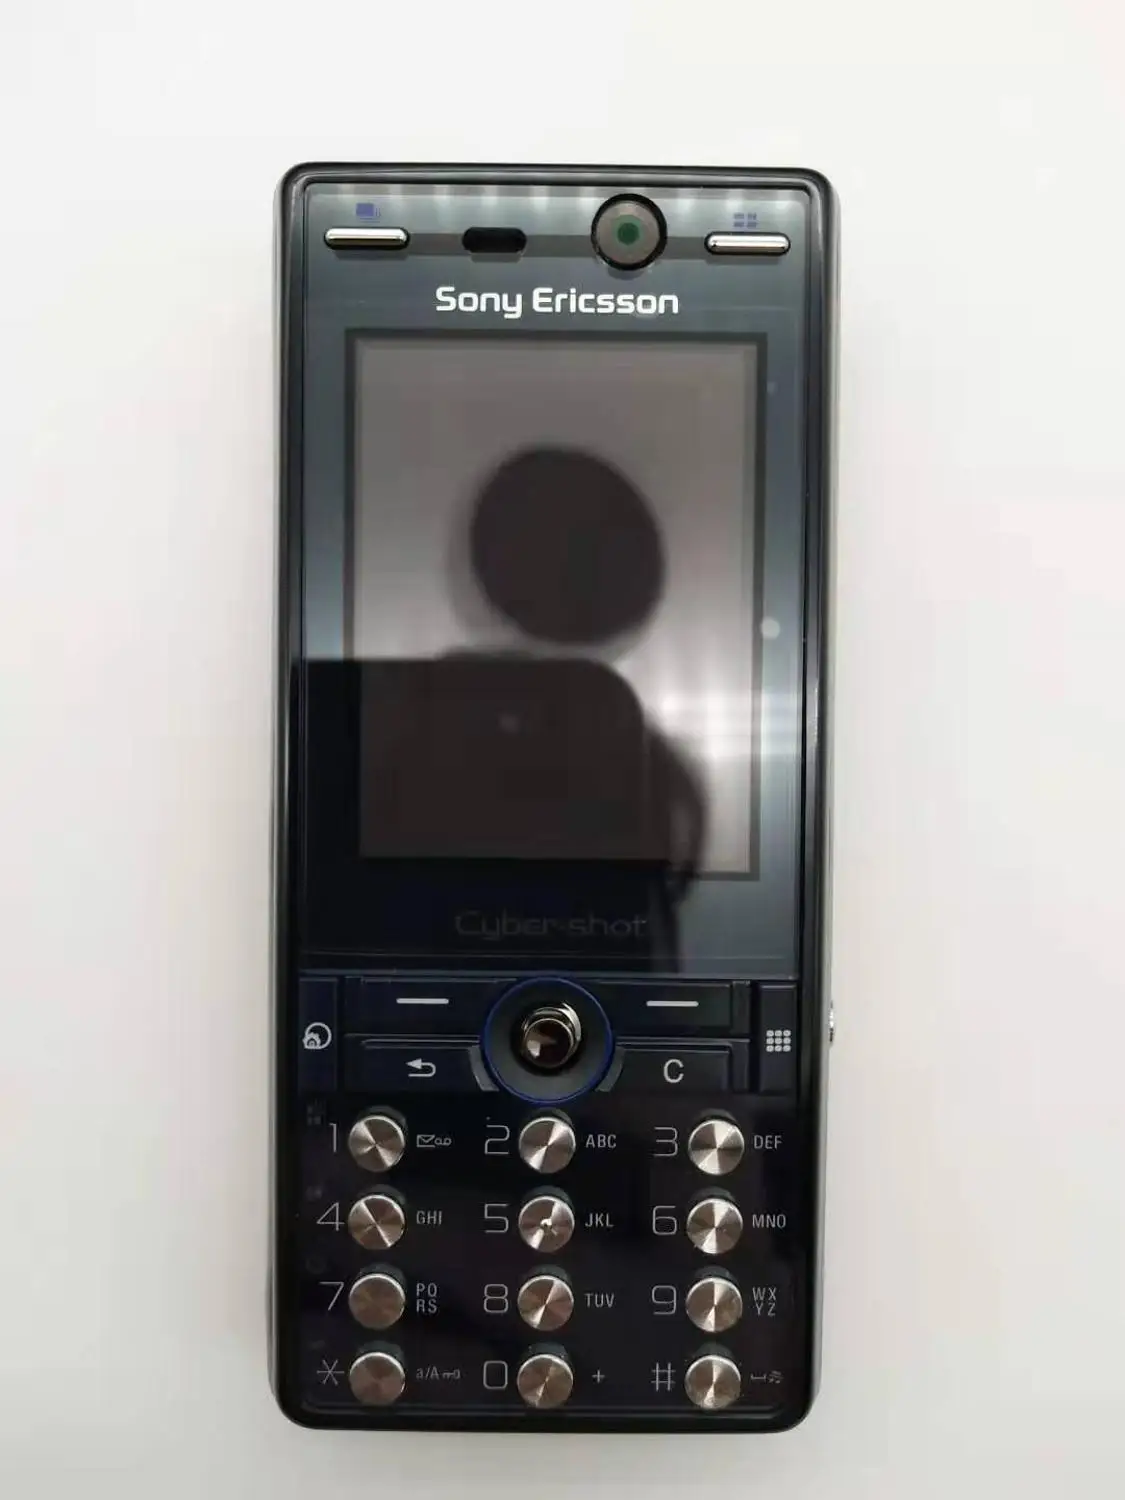 K810 Unlokced sony Ericsson K810i мобильный телефон 2G Bluetooth 3,15 Мп камера FM разблокированный сотовый телефон